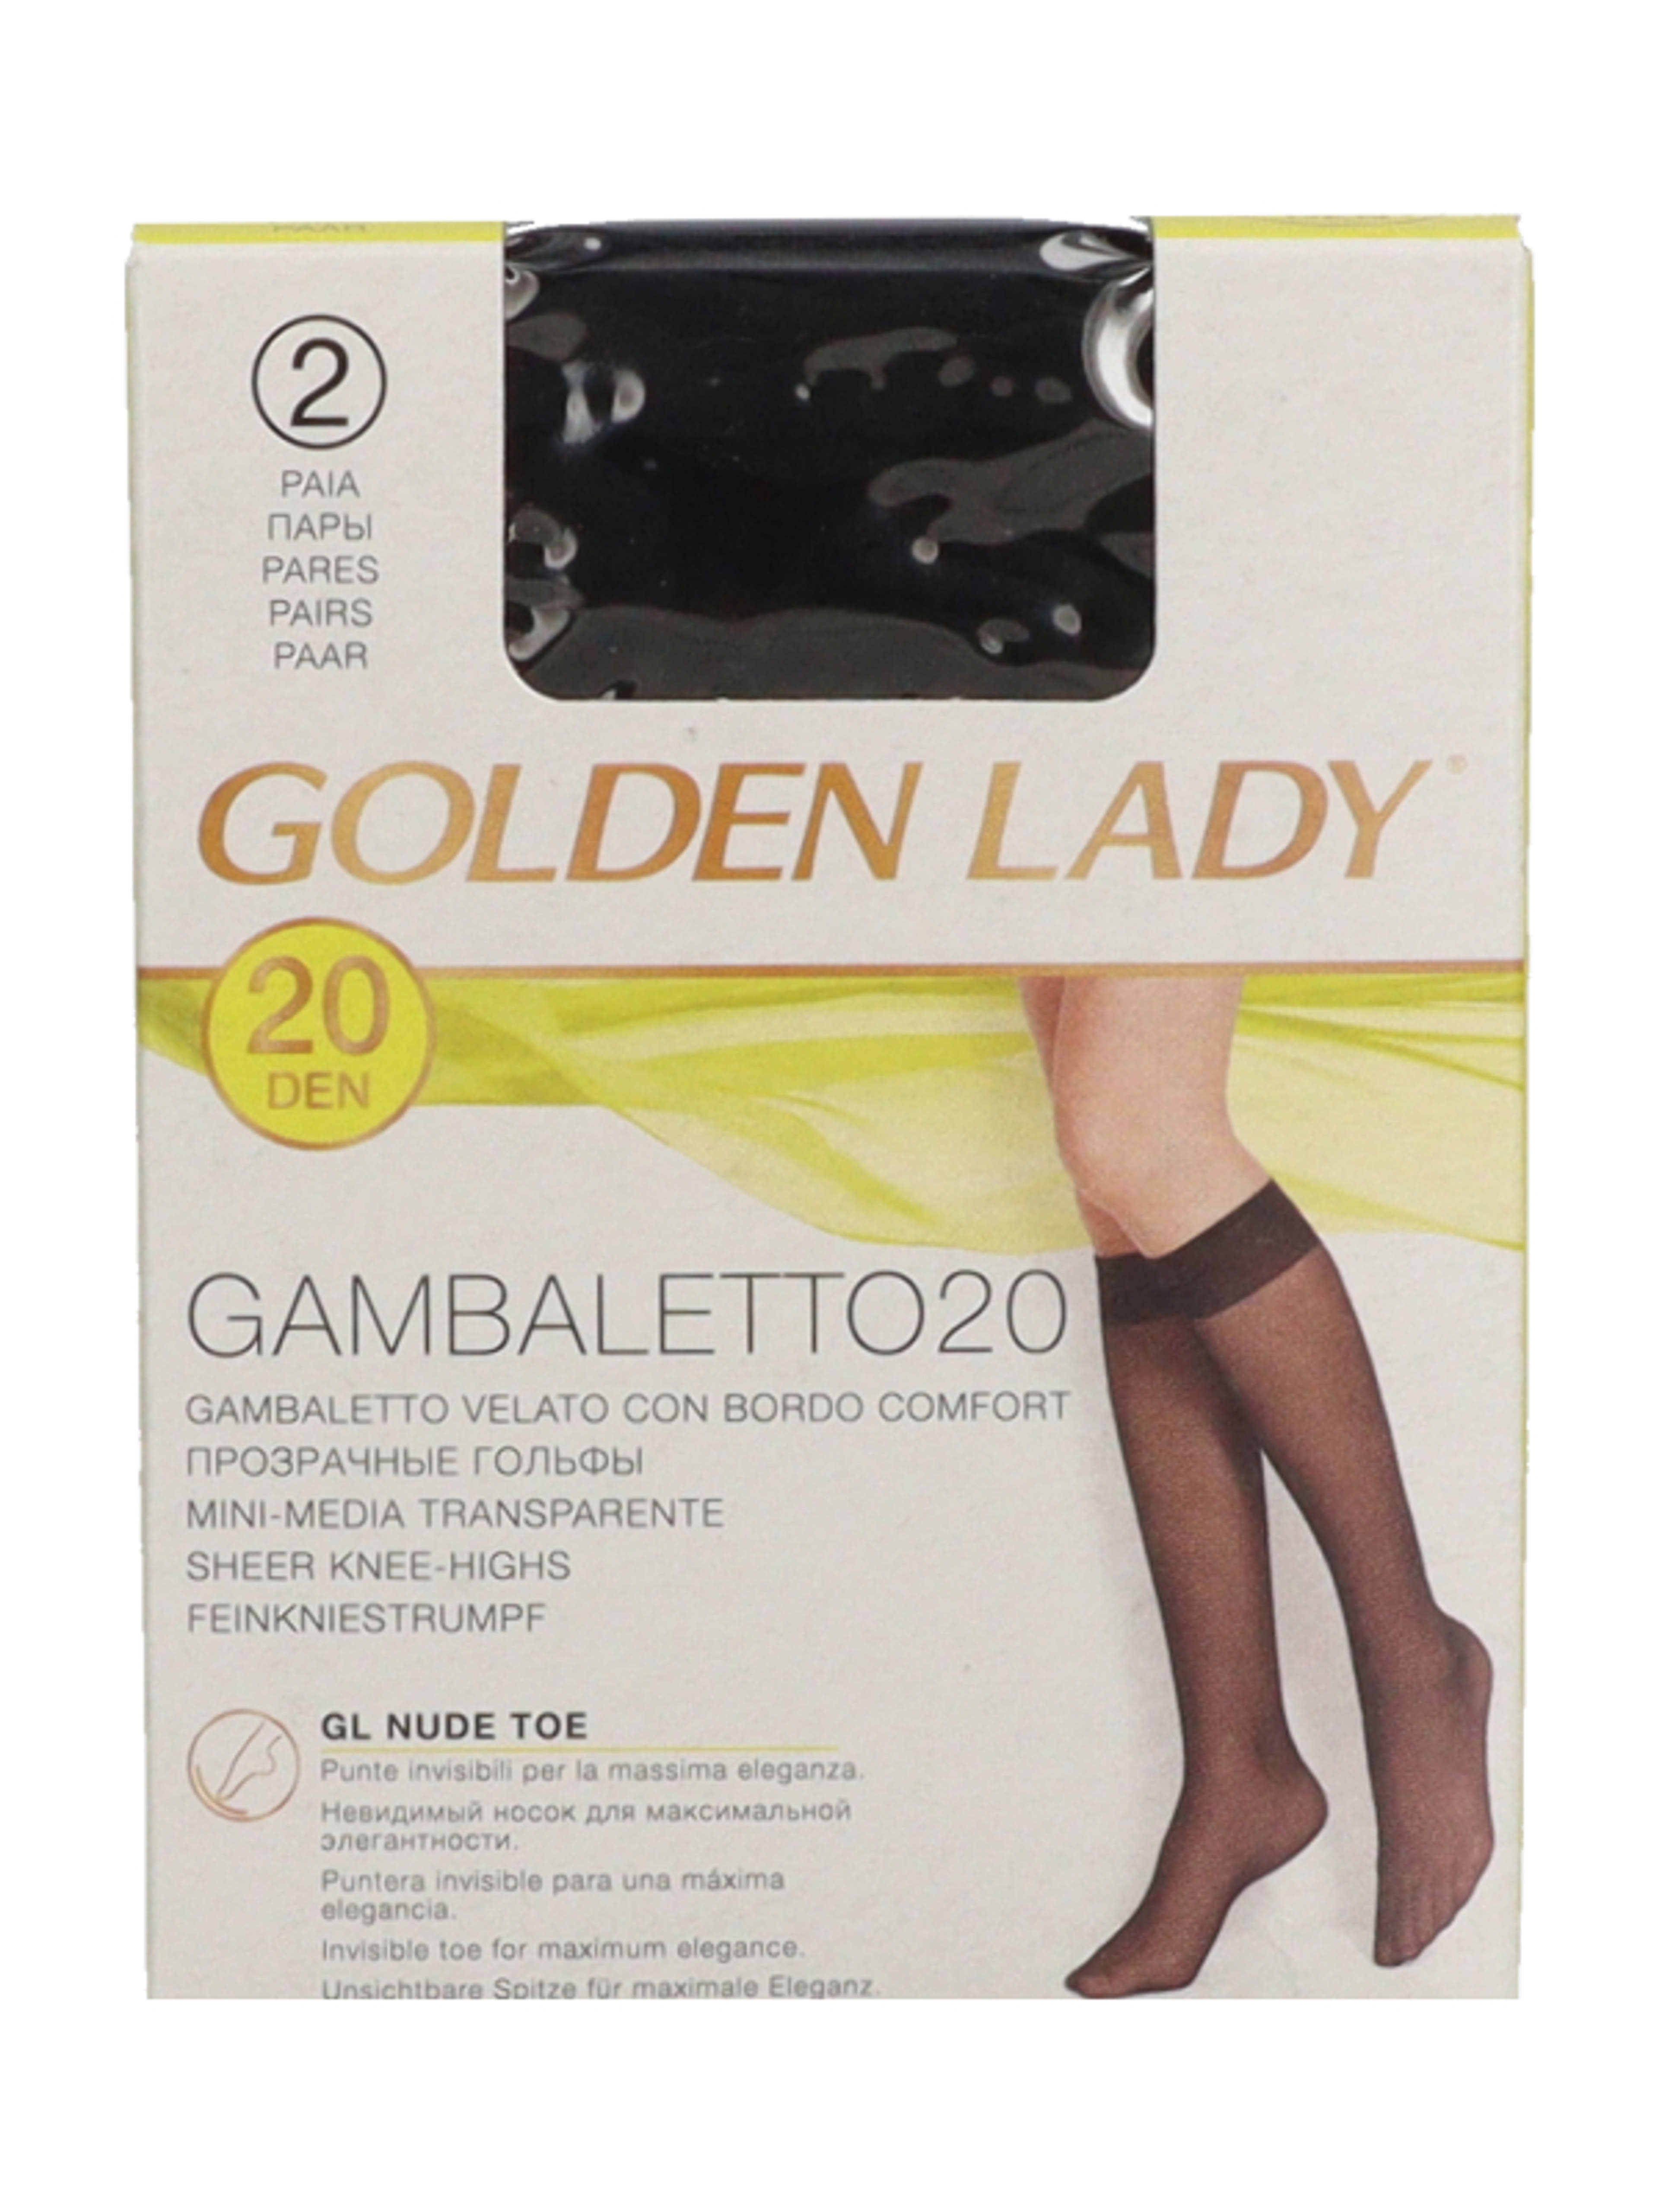 Golden Lady Gambaletto térdfix 20 Den fekete - 2 db